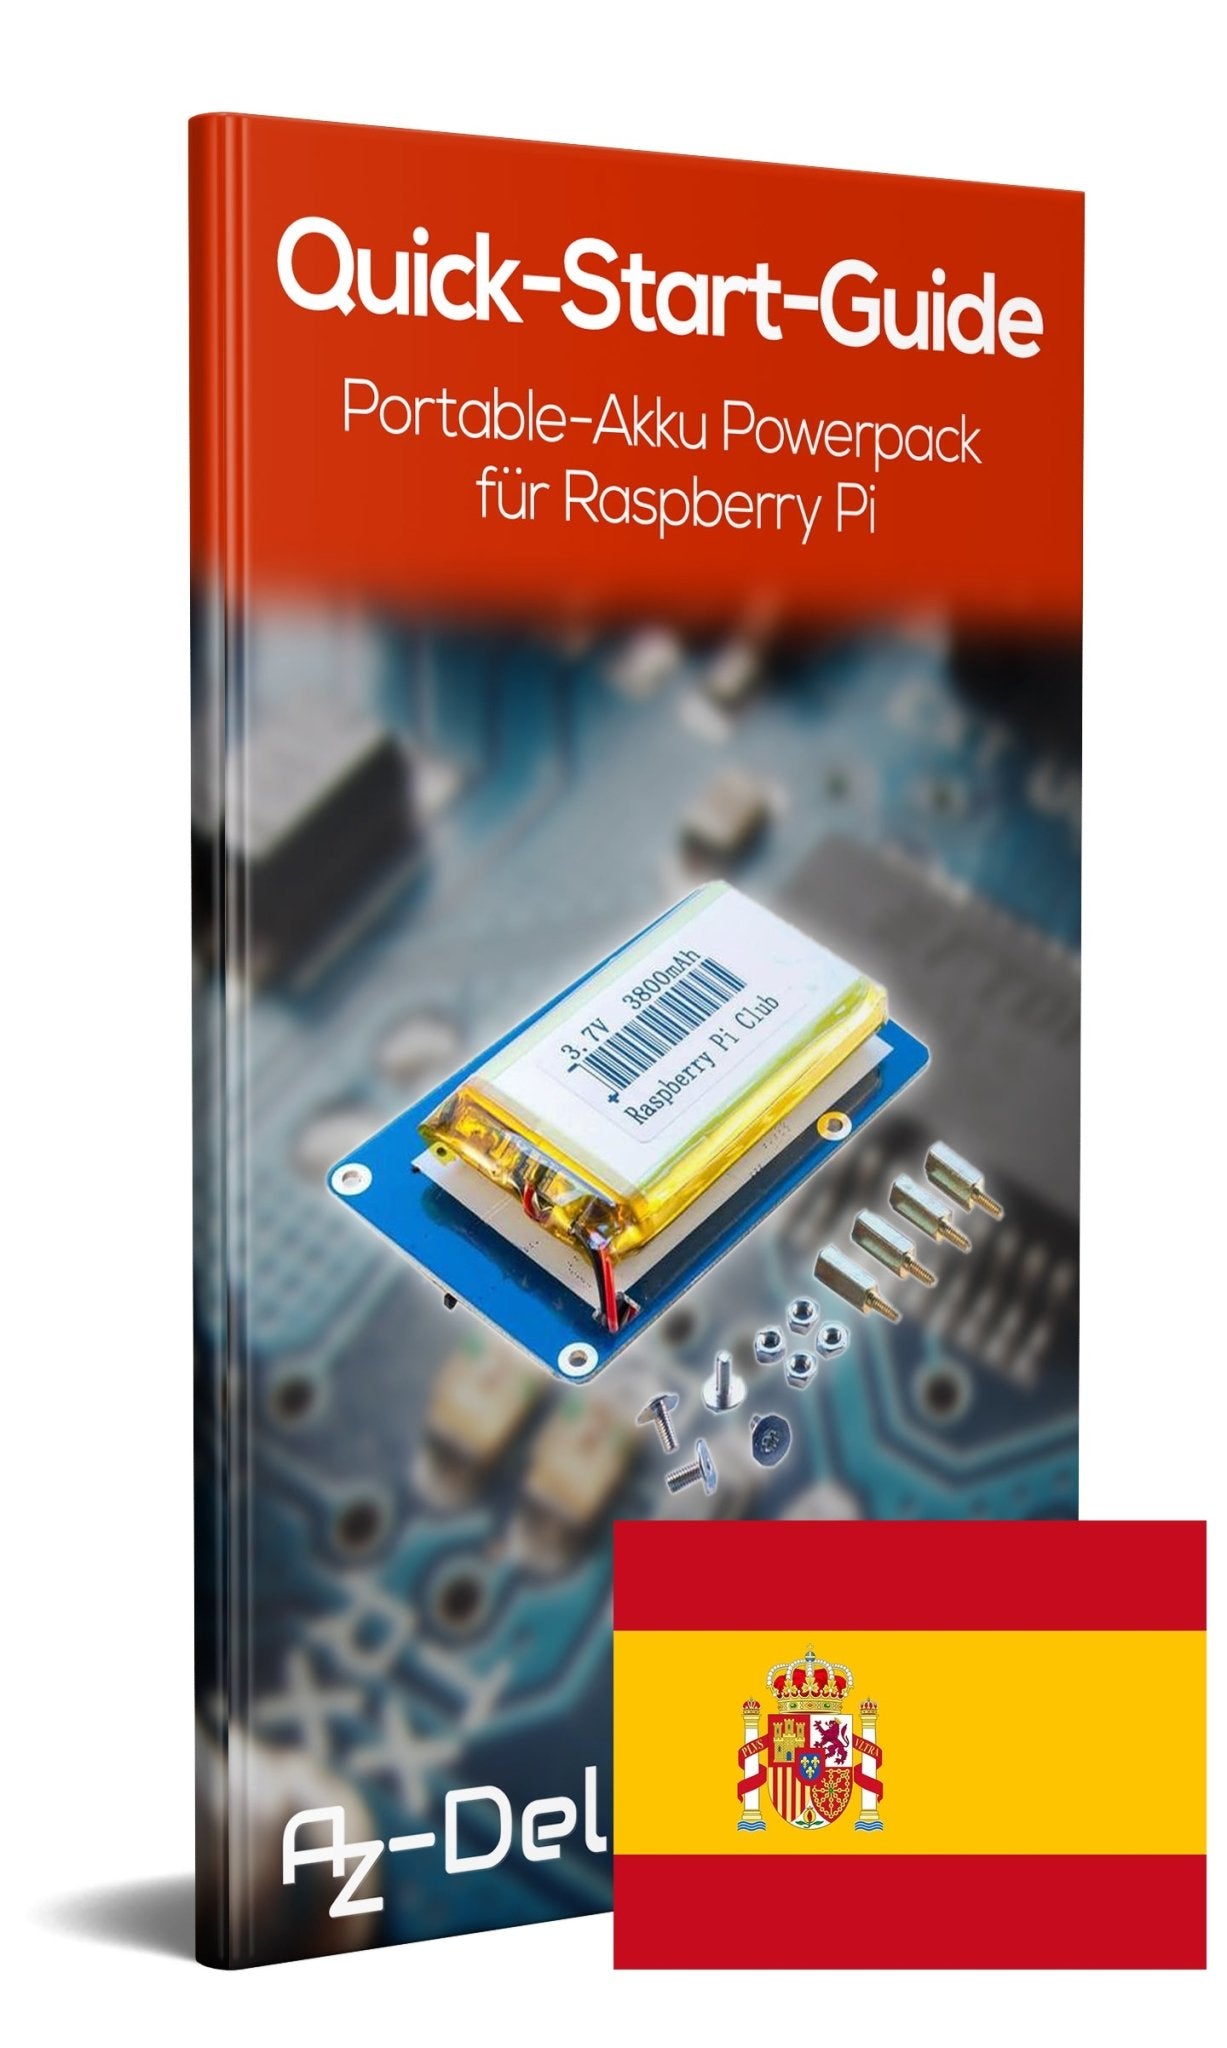 Portable-Akku Powerpack für Raspberry Pi - AZ-Delivery